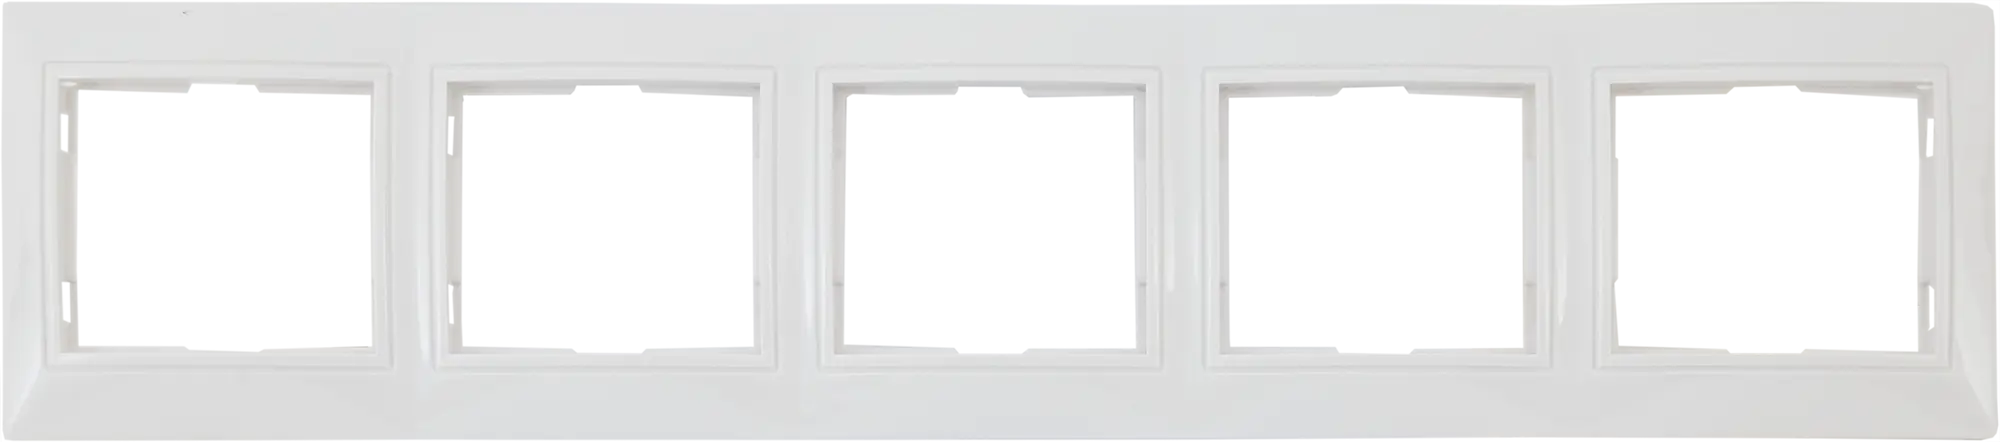 Рамка для розеток и выключателей горизонтальная Таймыр 5 постов, цвет белый горизонтальная бухгалтерская книга attache